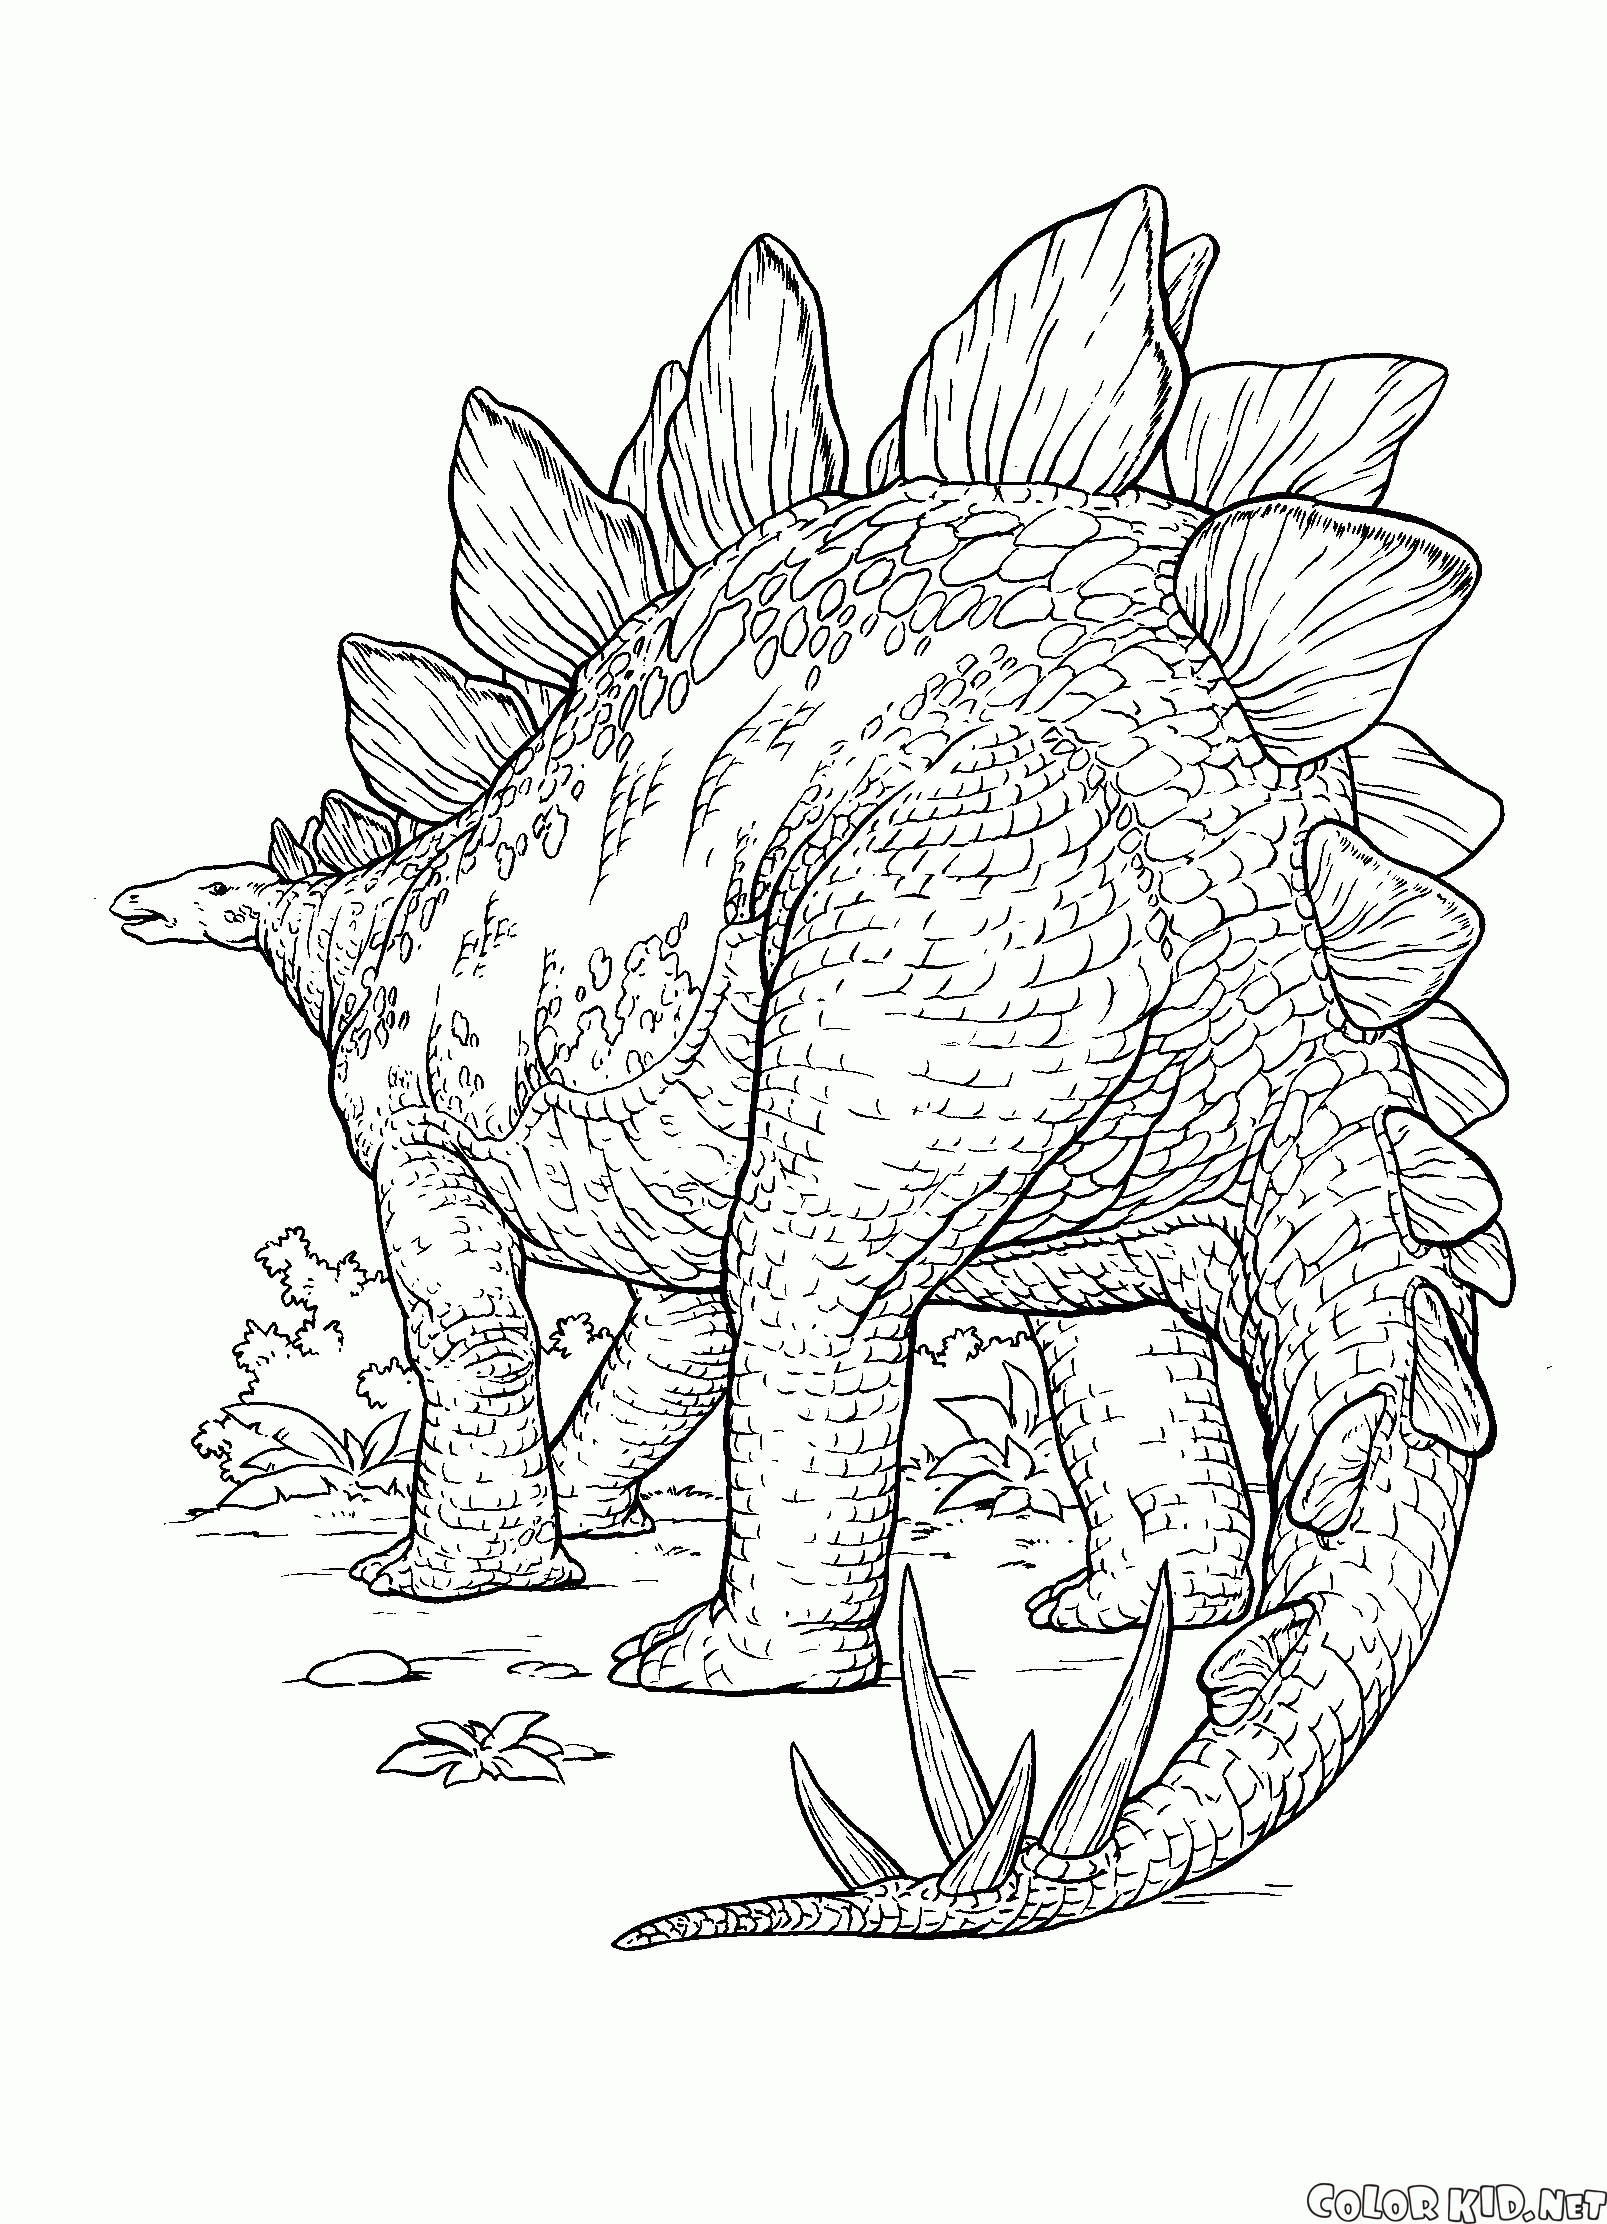 Dinosaurio con espinas afiladas